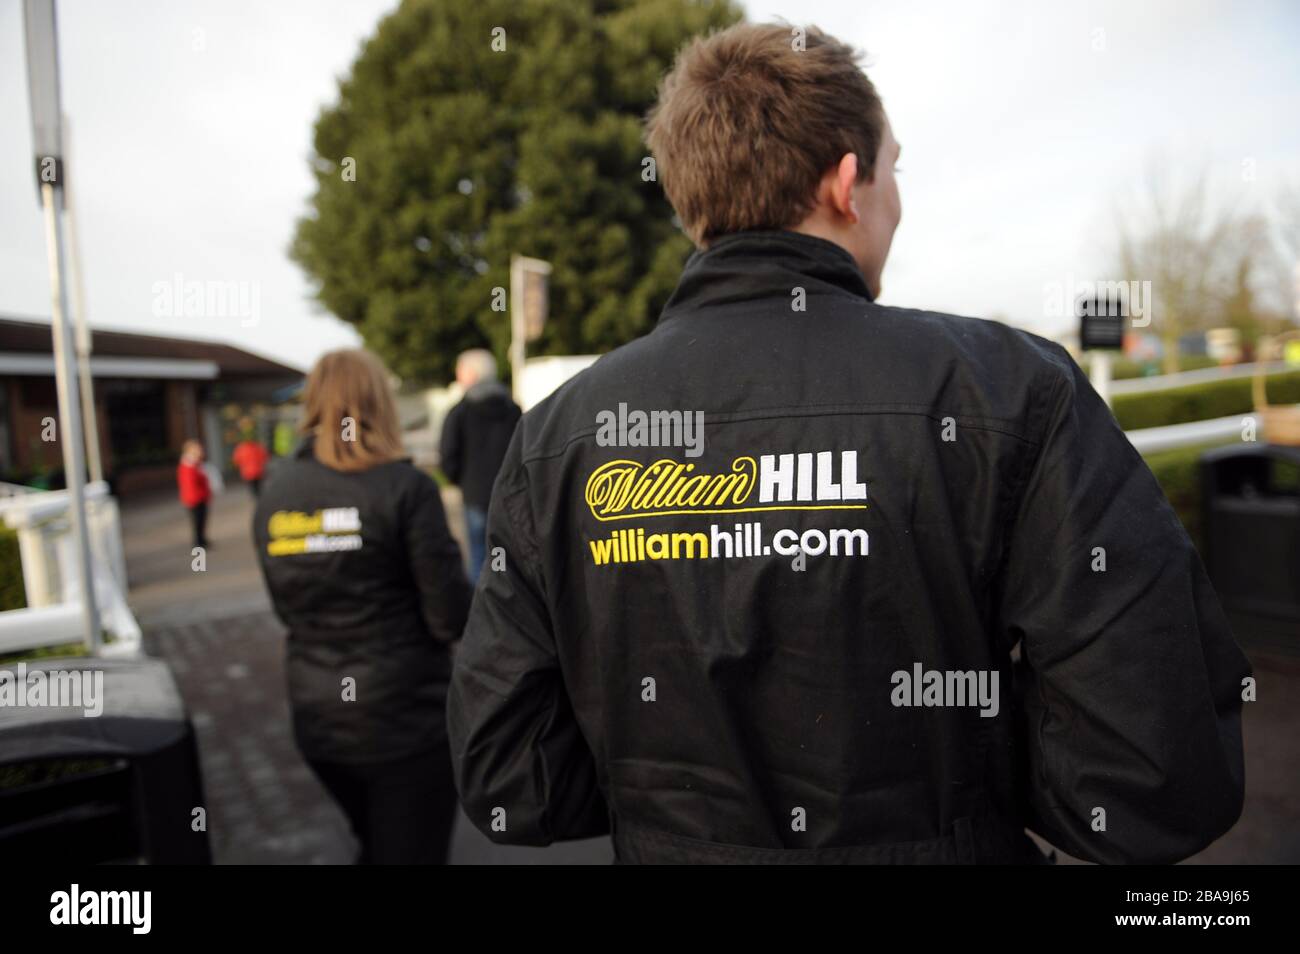 Détail de la signalisation de William Hill sur les tenues de l'équipe de promotions à l'hippodrome de Kempton Park Banque D'Images